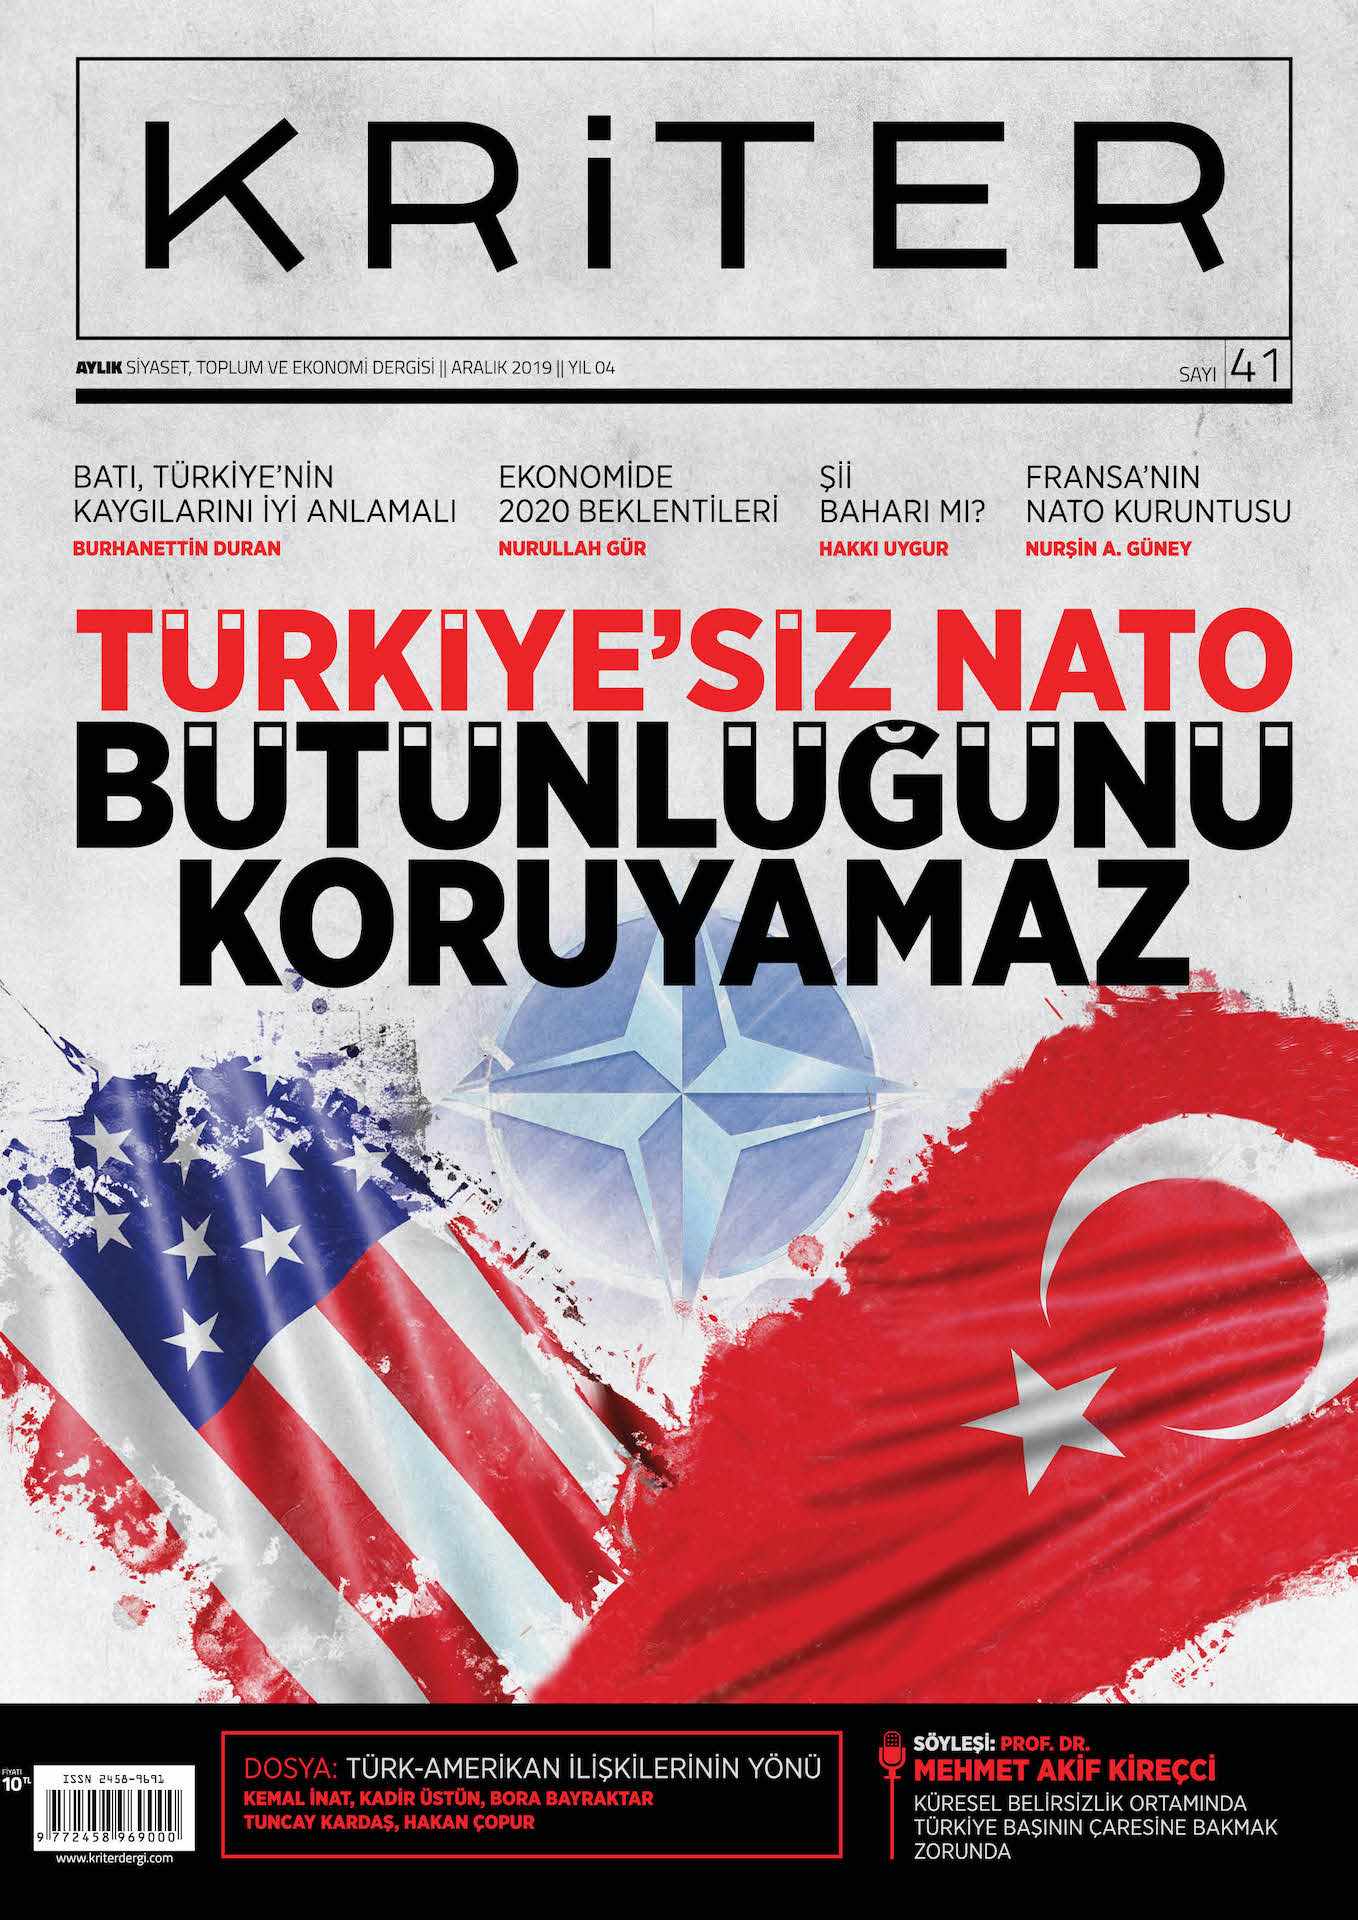 Kriter’in Aralık Sayısı Çıktı: Türkiye'siz NATO Bütünlüğünü Koruyamaz